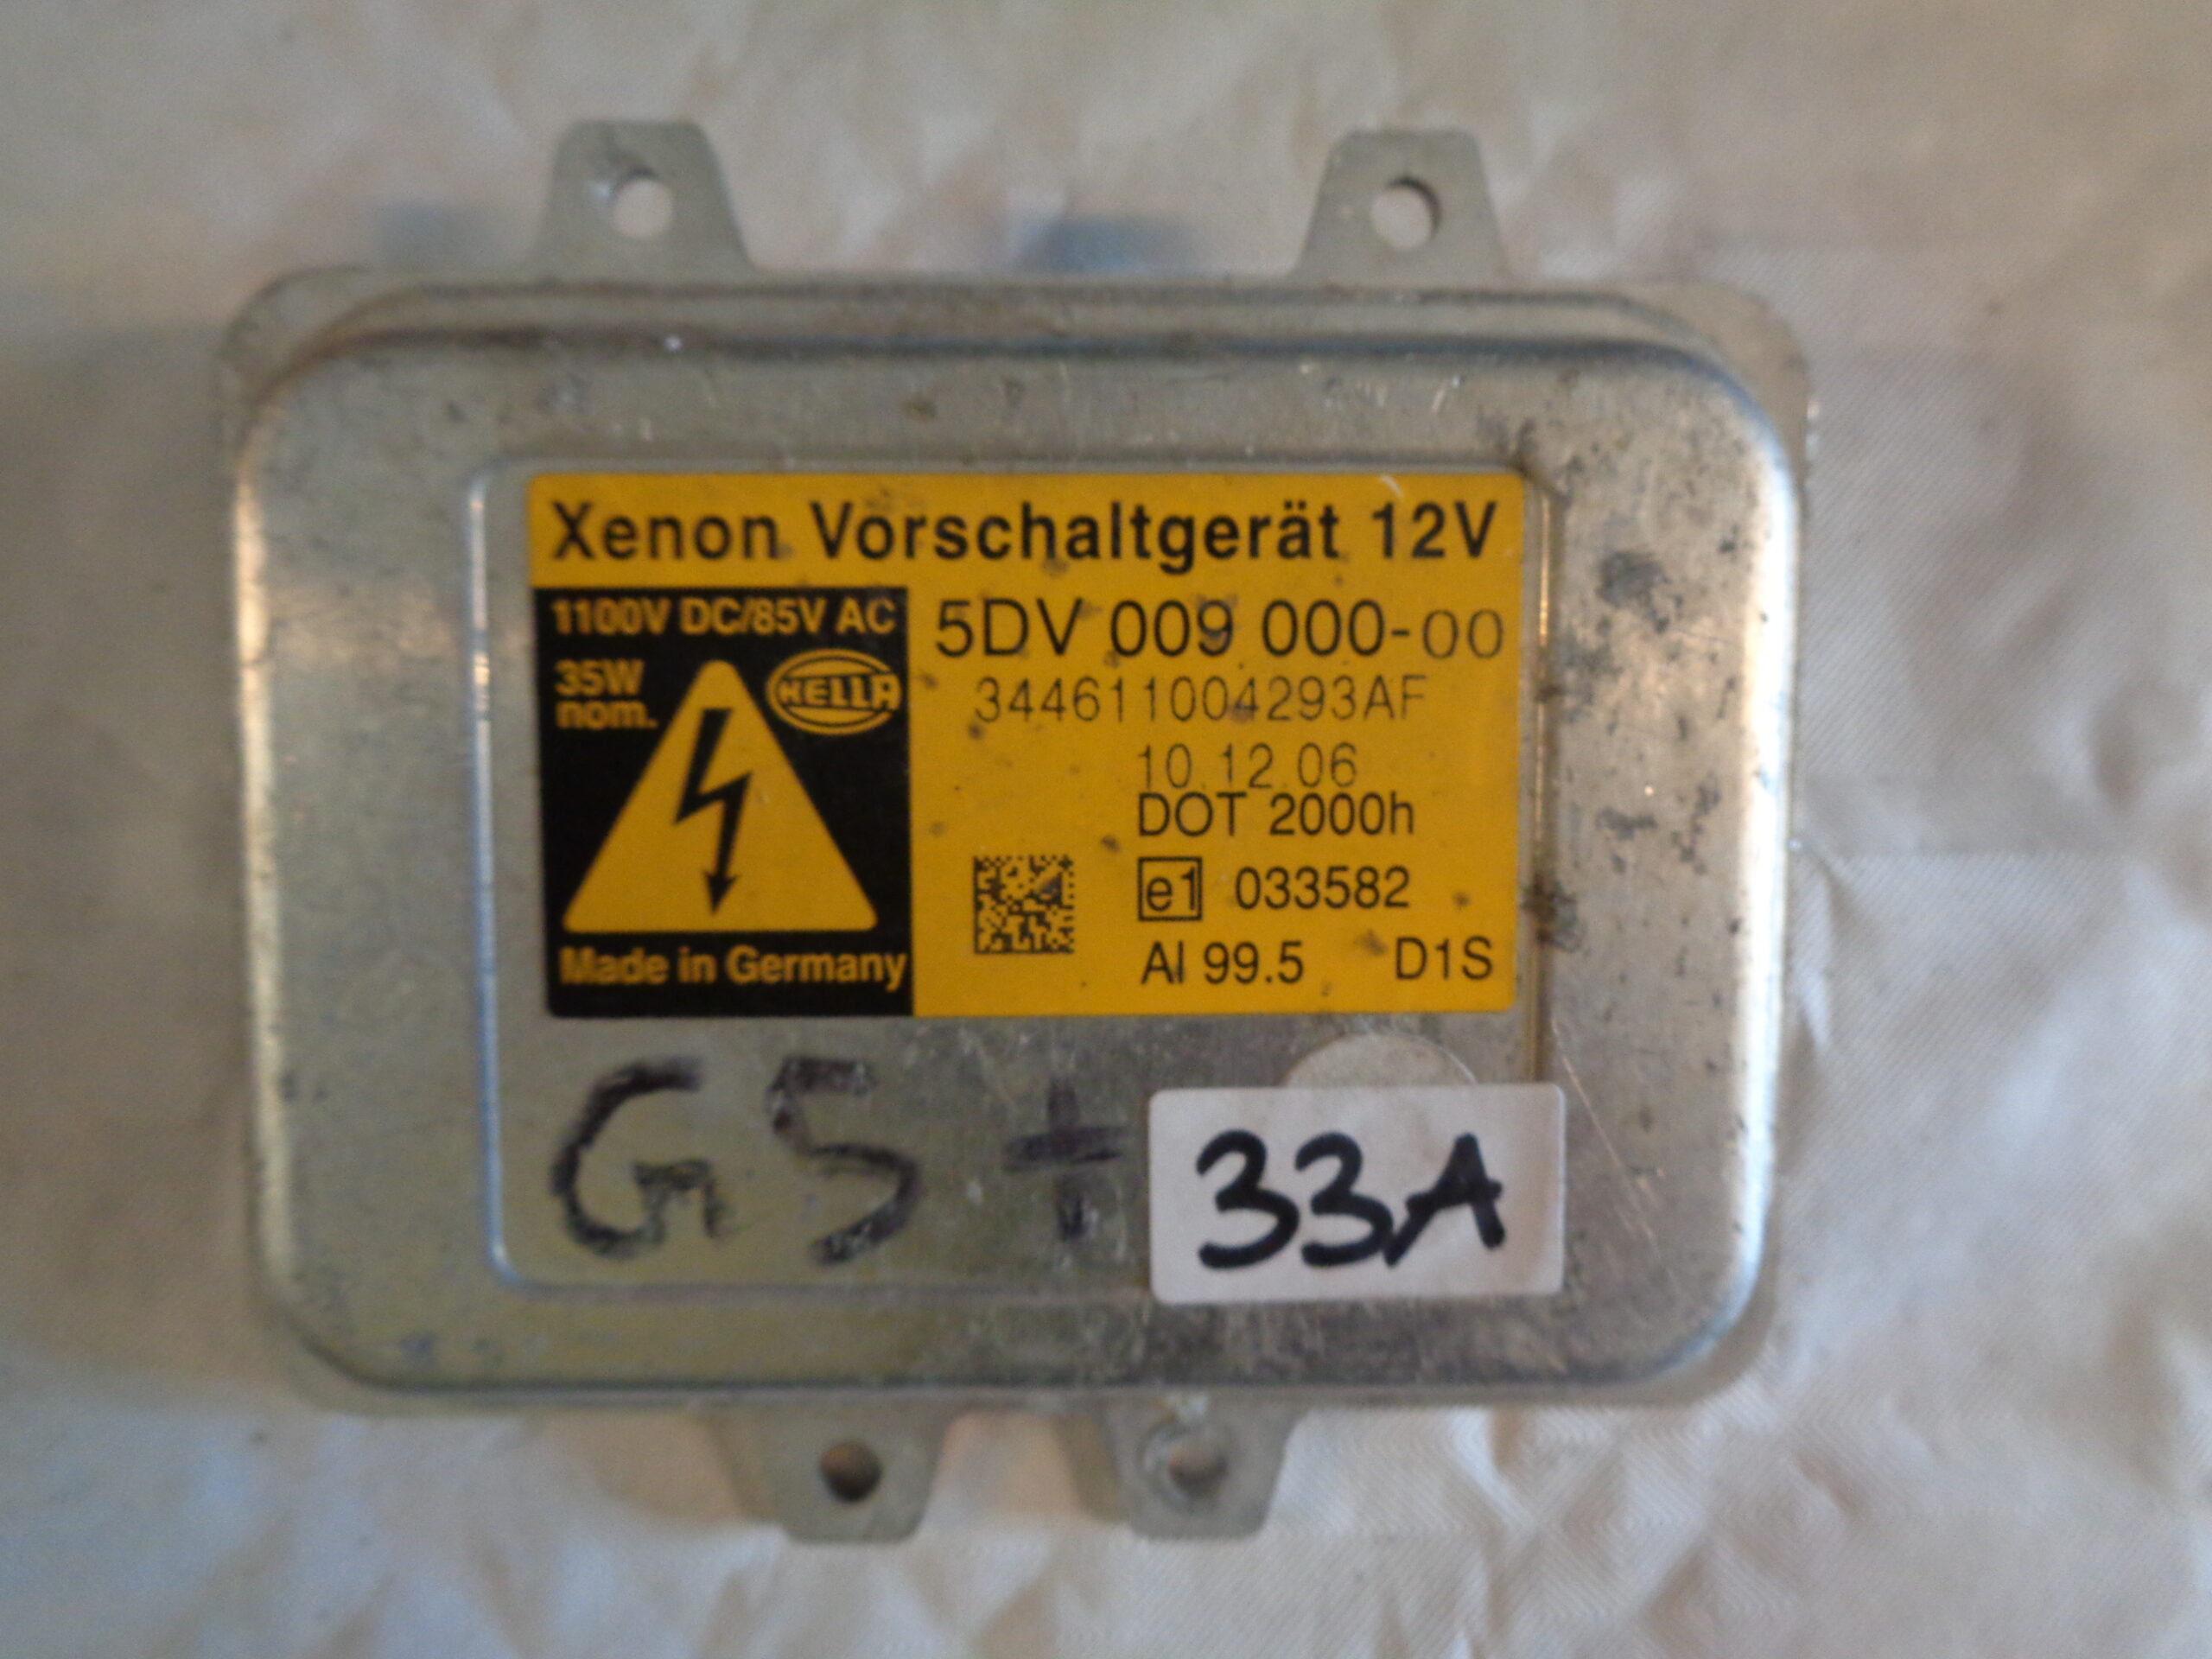 5DV 009 000-001 Vorschaltgerät – Xenon – 12V